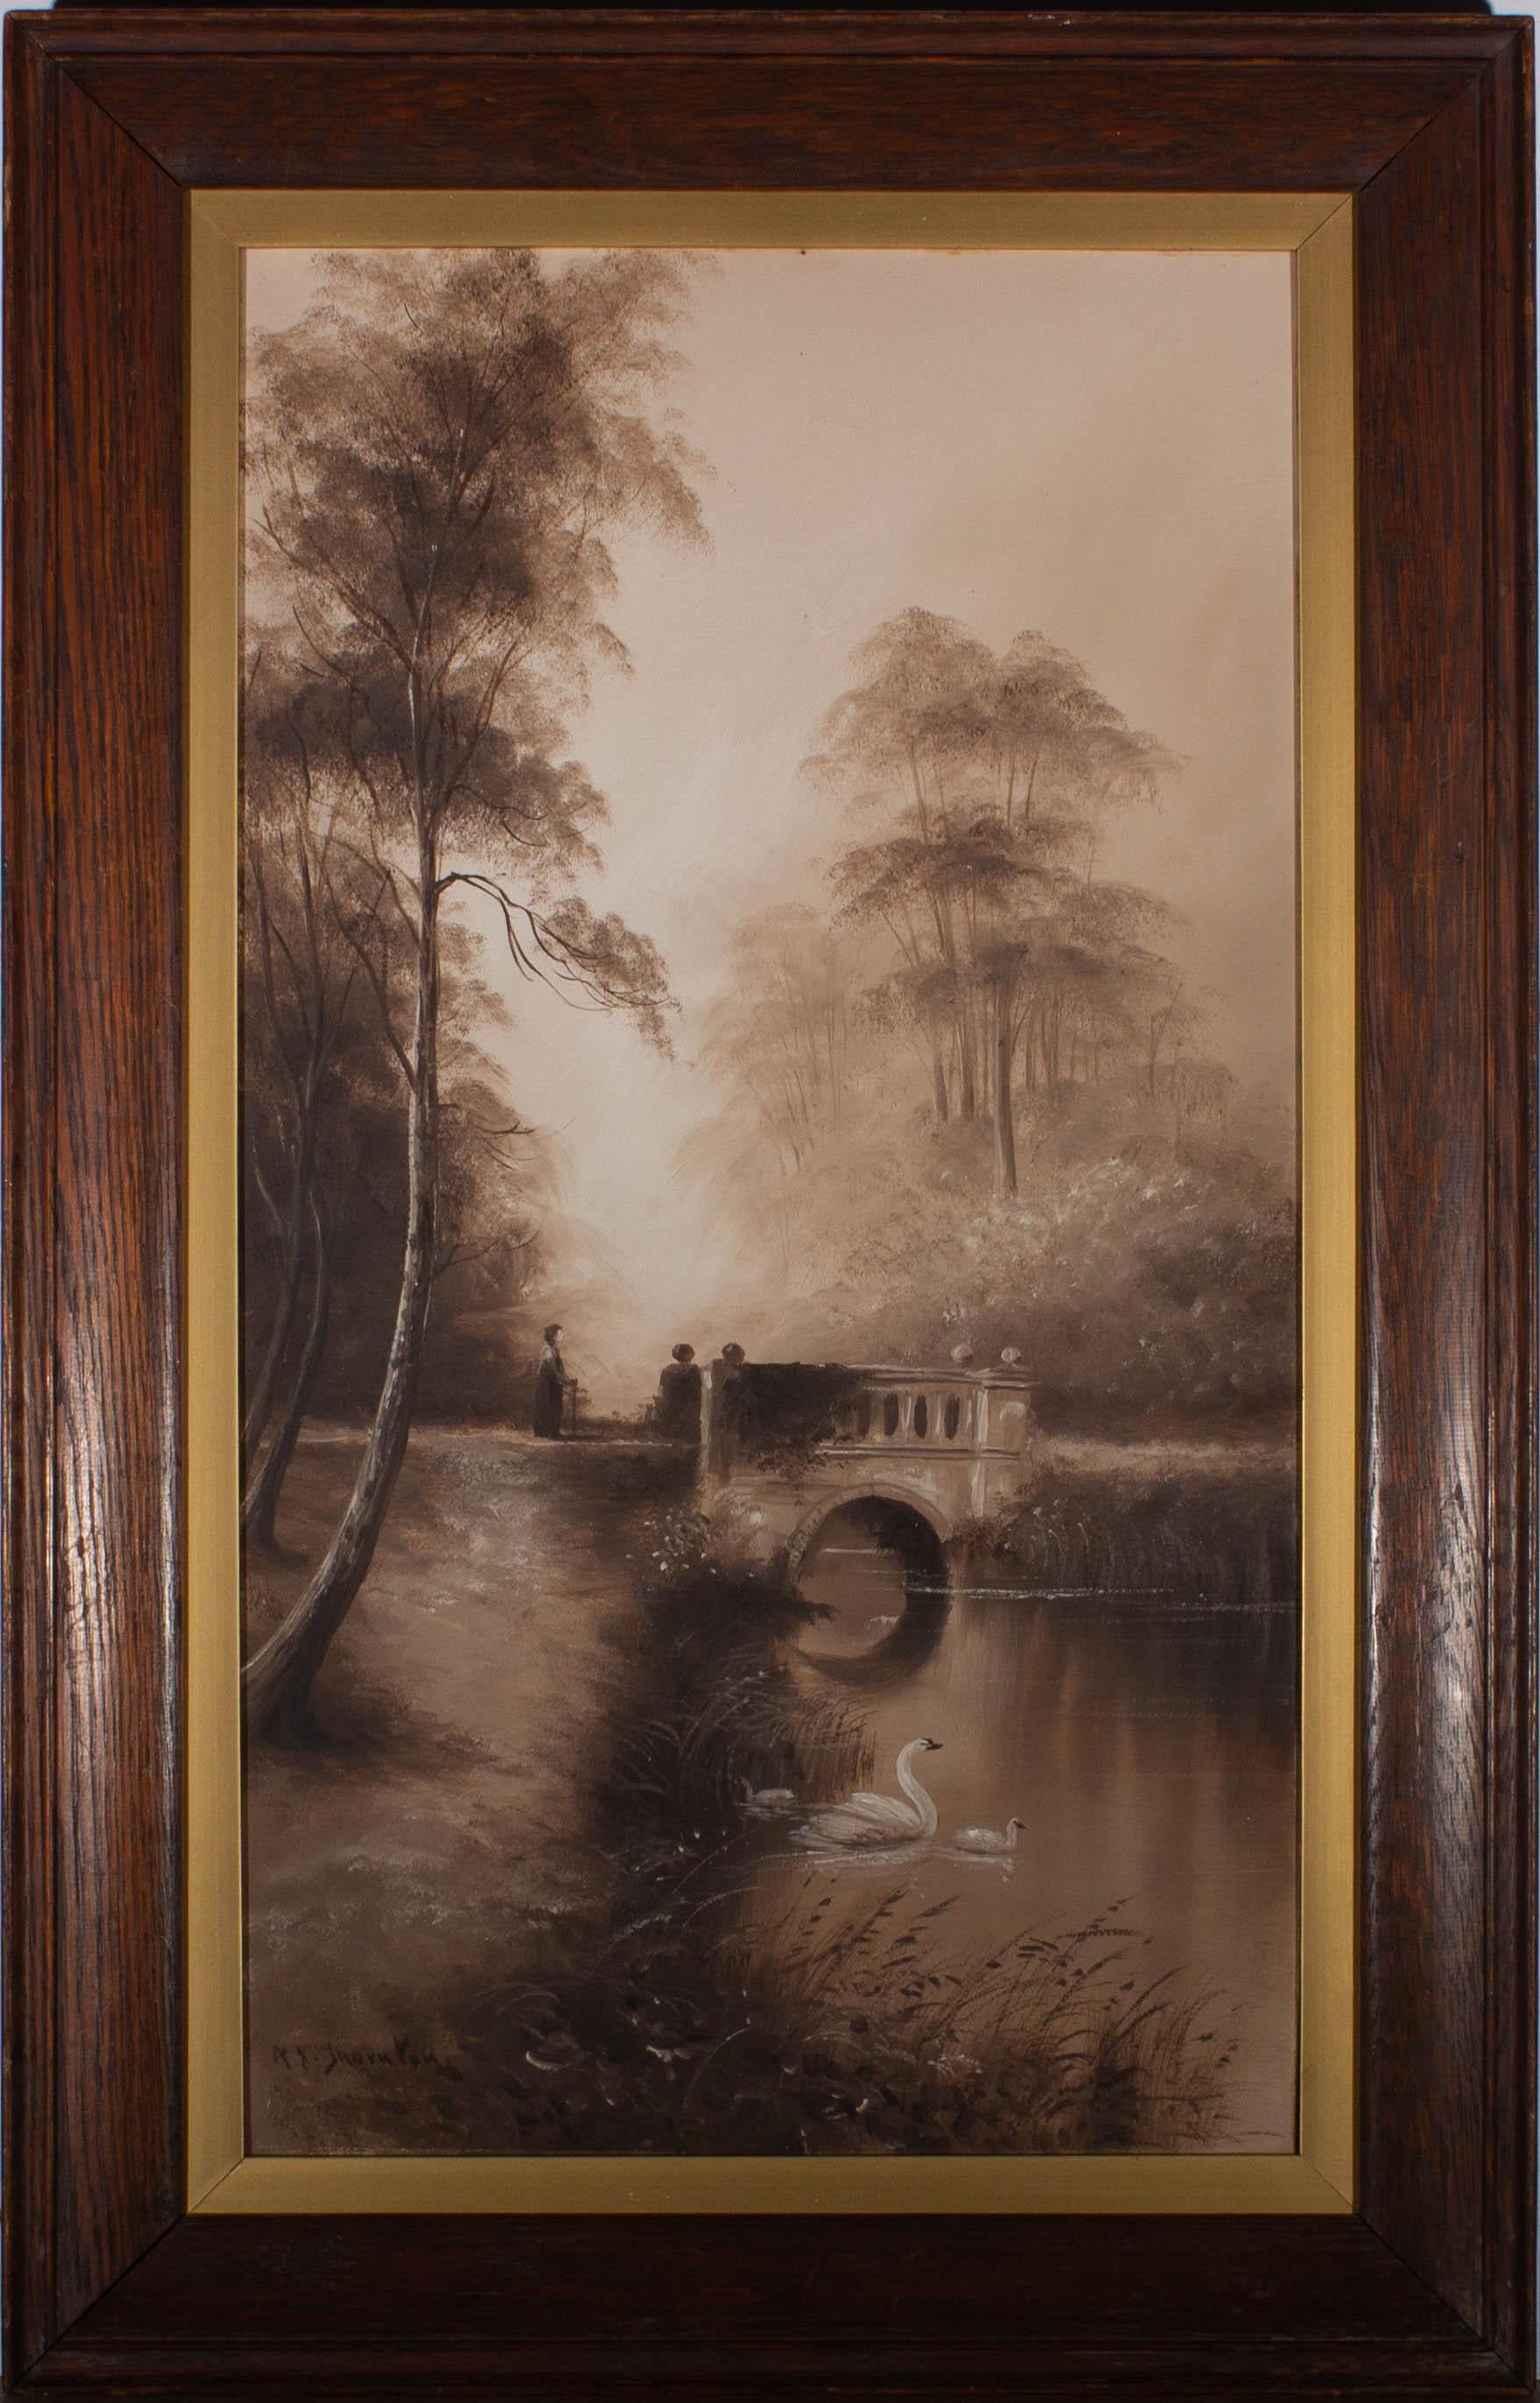 Zeigt einen Schwan und seine beiden Gänseküken an einem friedlichen Fluss. Im Hintergrund geht eine ältere Frau über die malerische Steinbrücke, die von hohen, eleganten Bäumen umgeben ist. Signiert unten rechts. Gut präsentiert in originalem